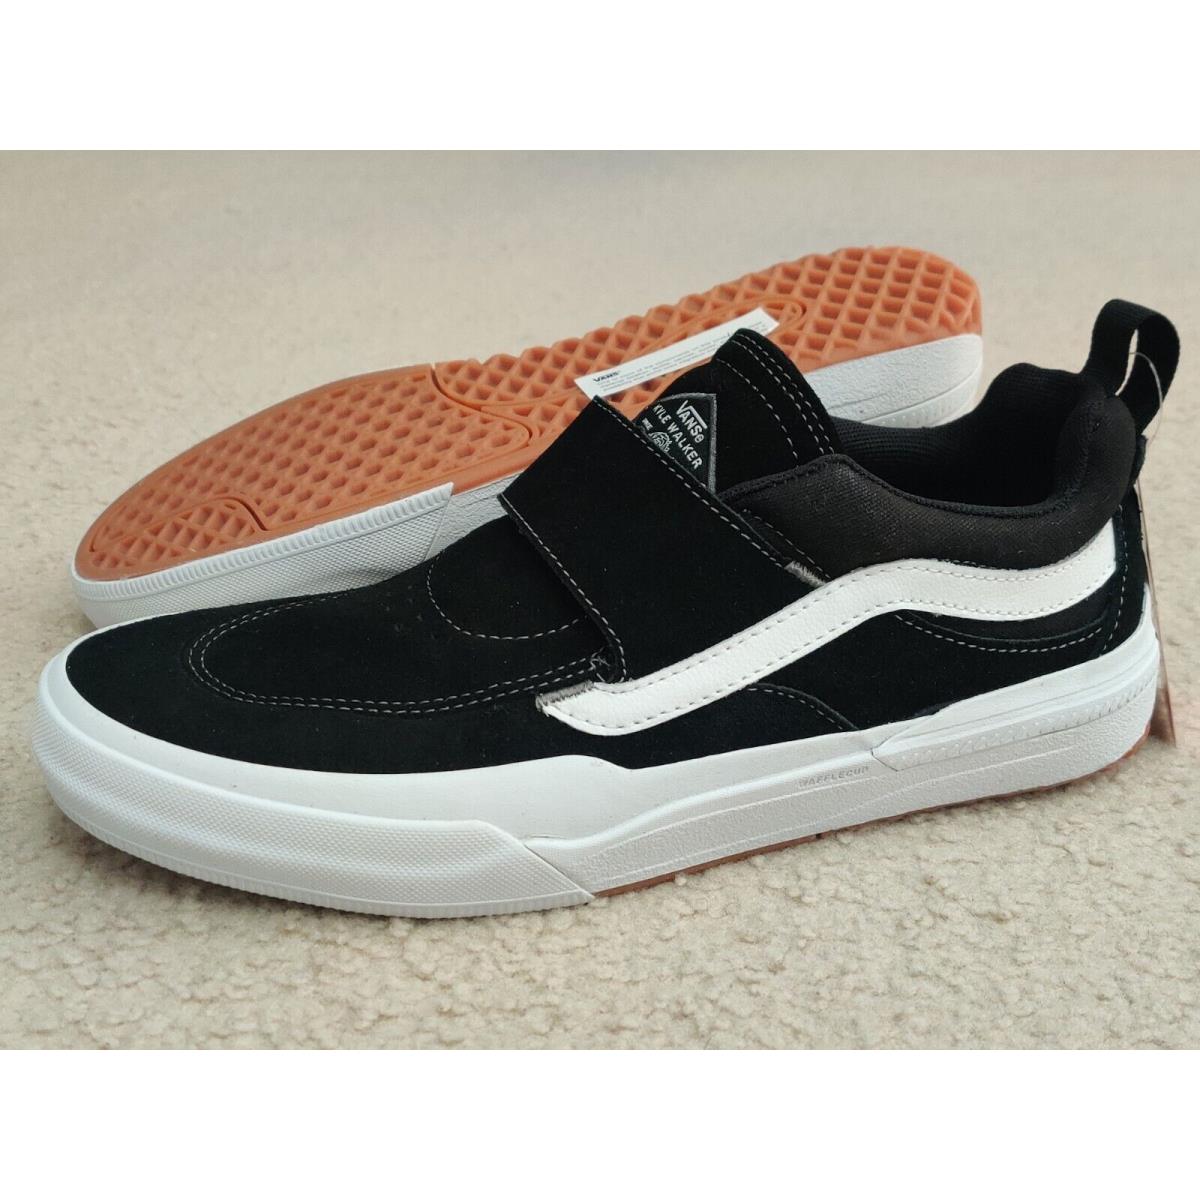 Vans Men`s Kyle Walker Pro 2 Suede Shoes Black White Size 10 13 VN0A4UW3Y28  | 050433722185 - Vans shoes Kyle Pro - Black , Black/White Manufacturer |  SporTipTop